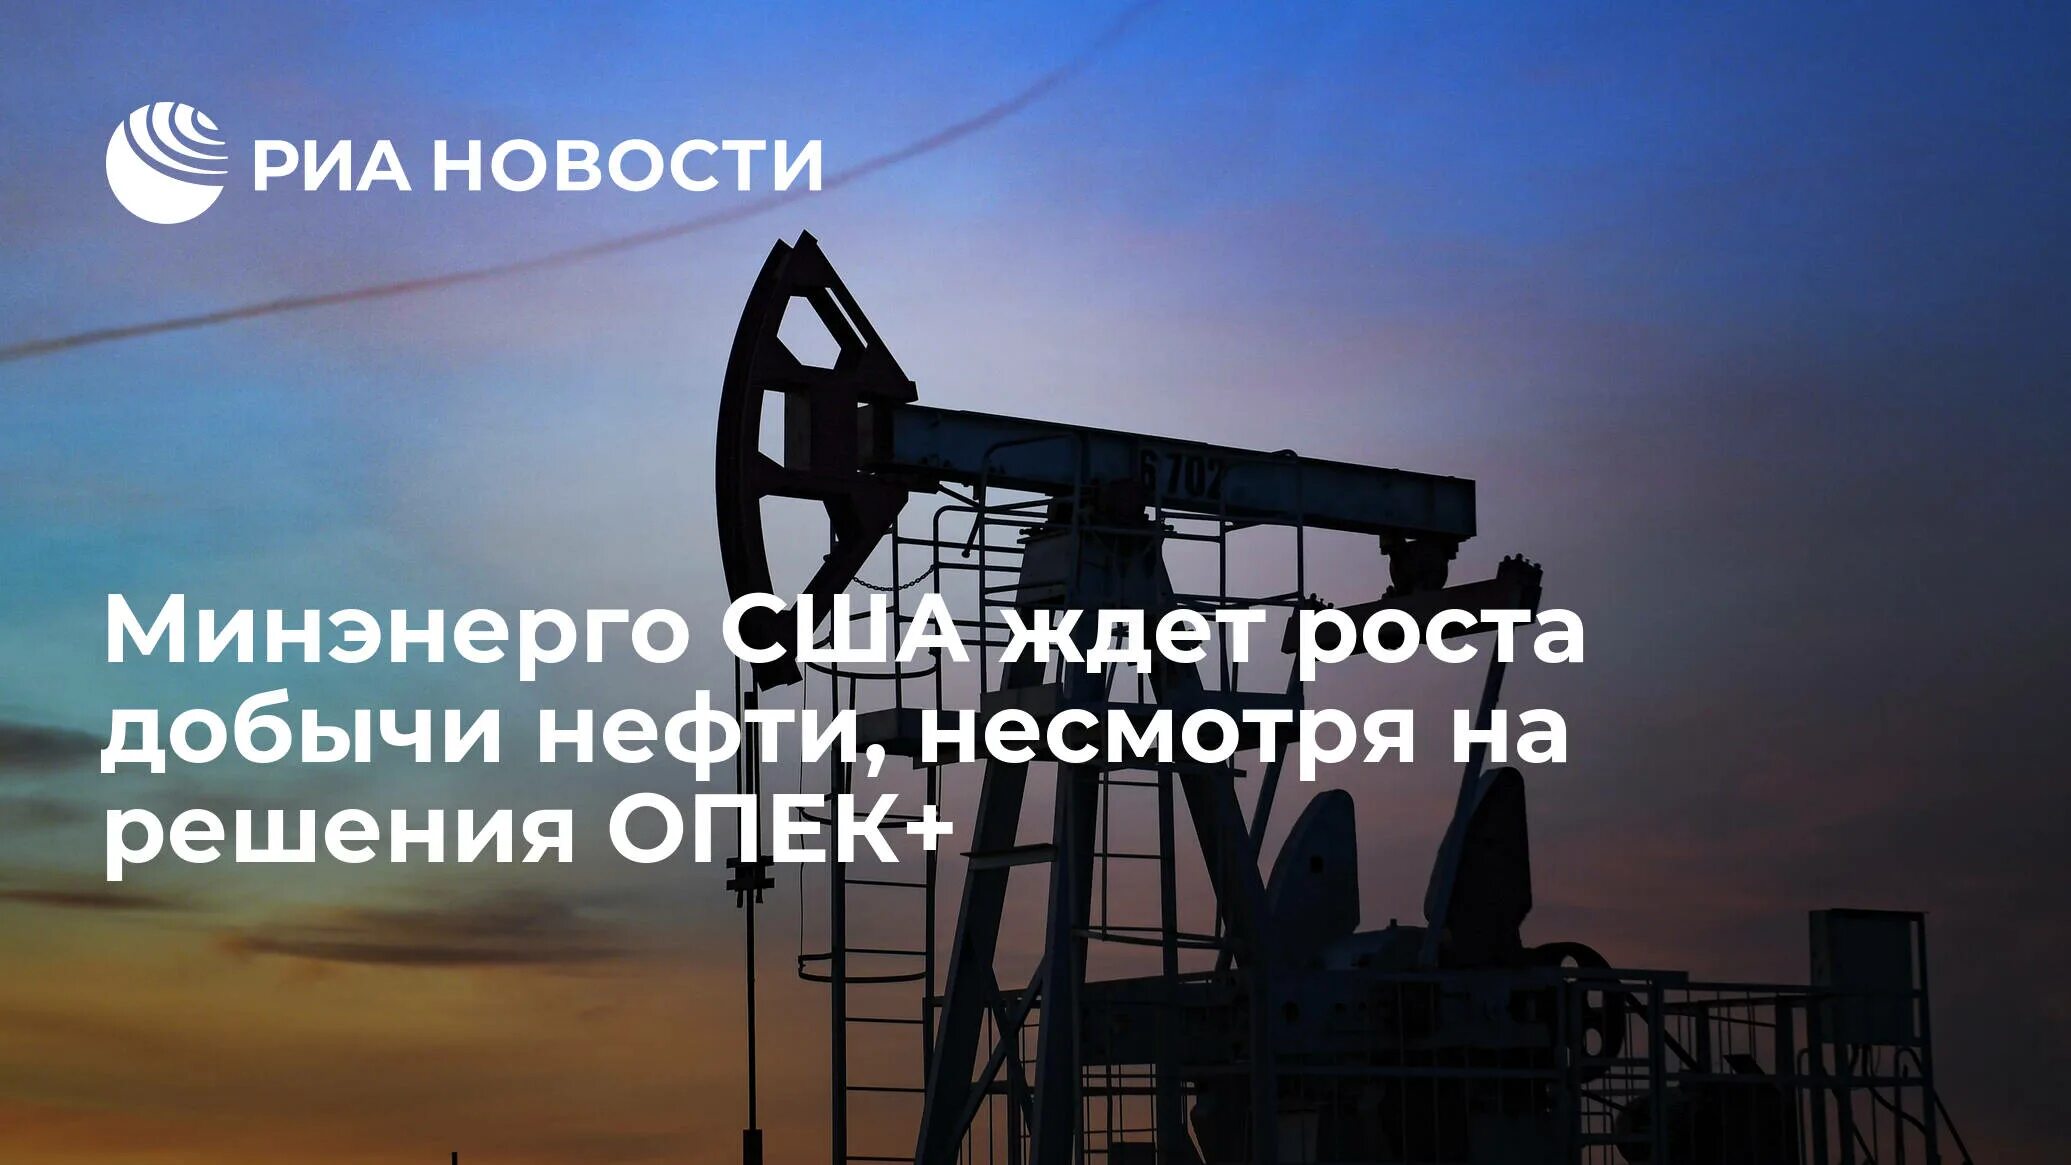 Повышение добычи нефти. Добыча нефти. Российская нефть. Нефтедобыча в России. ОПЕК нефть.